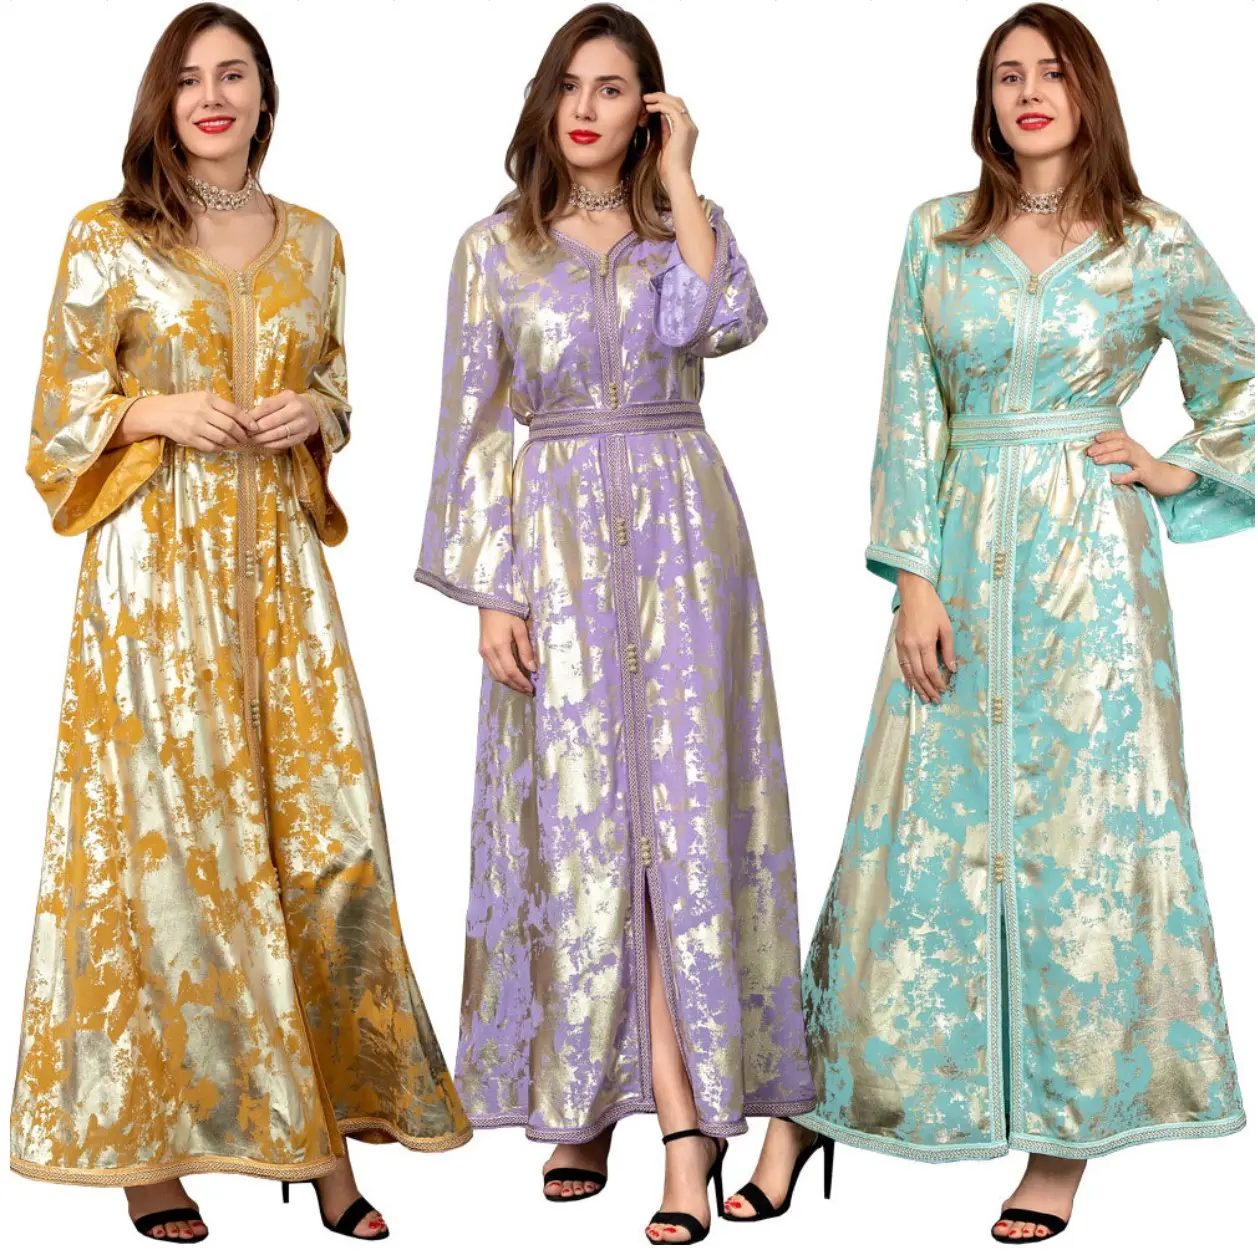 Son Dubai yüksek pahalı İslami giyim müslüman kadınlar şifon Kaftan Abaya türkiye fas elbise yaldız altın engelleme